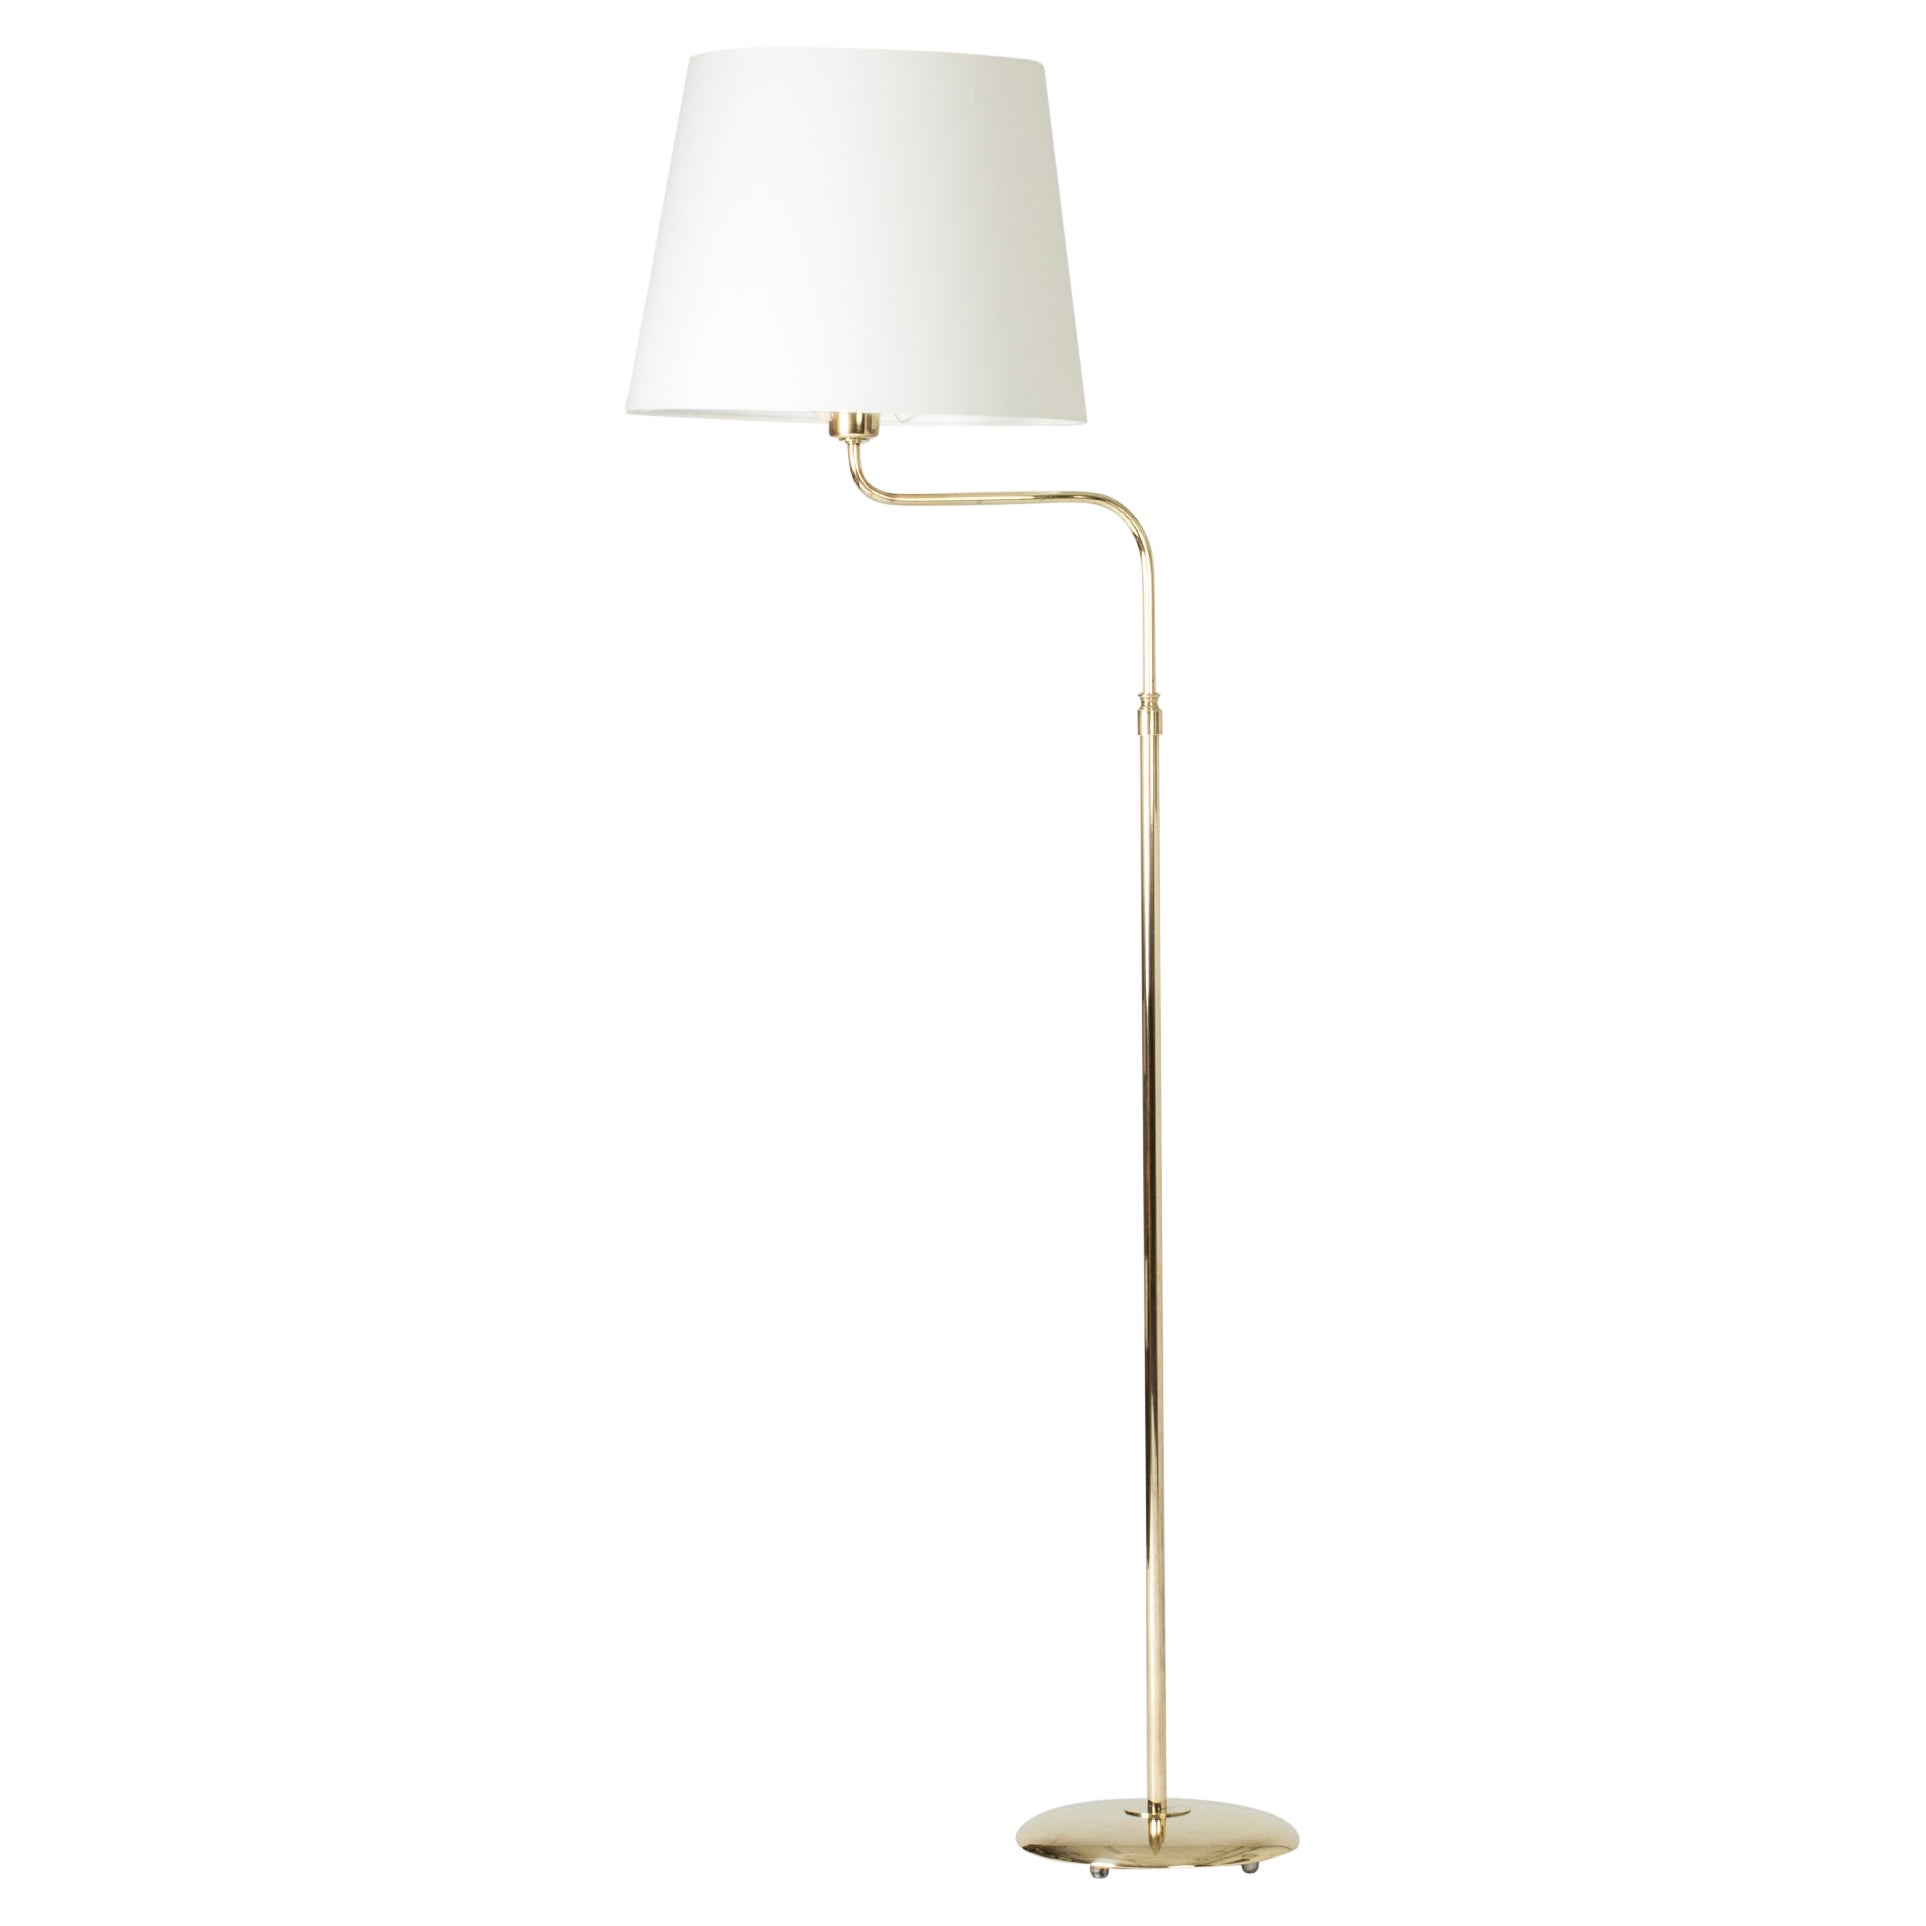 Scandinavian Midcentury Brass Floor Lamp from Nk, Sweden, 1950s For Sale